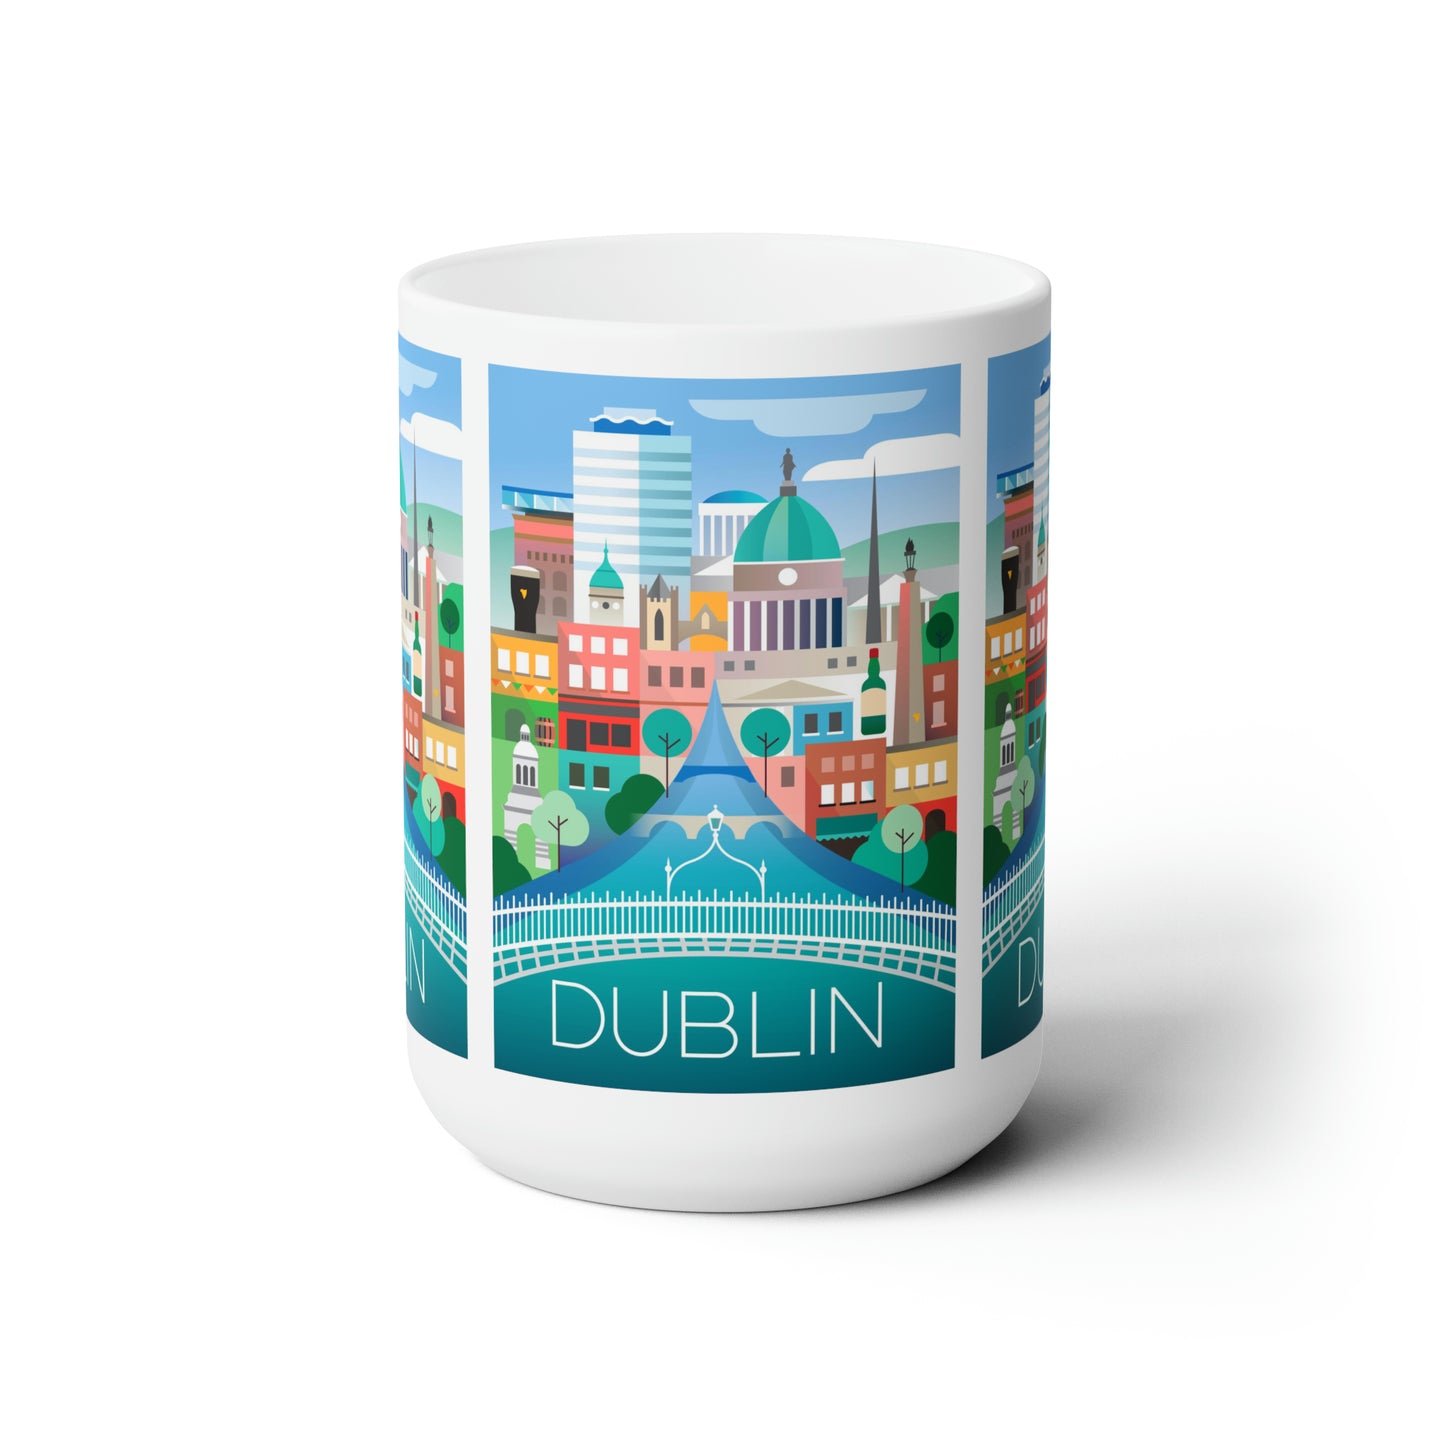 Dublin Ceramic Mug 11oz or 15oz